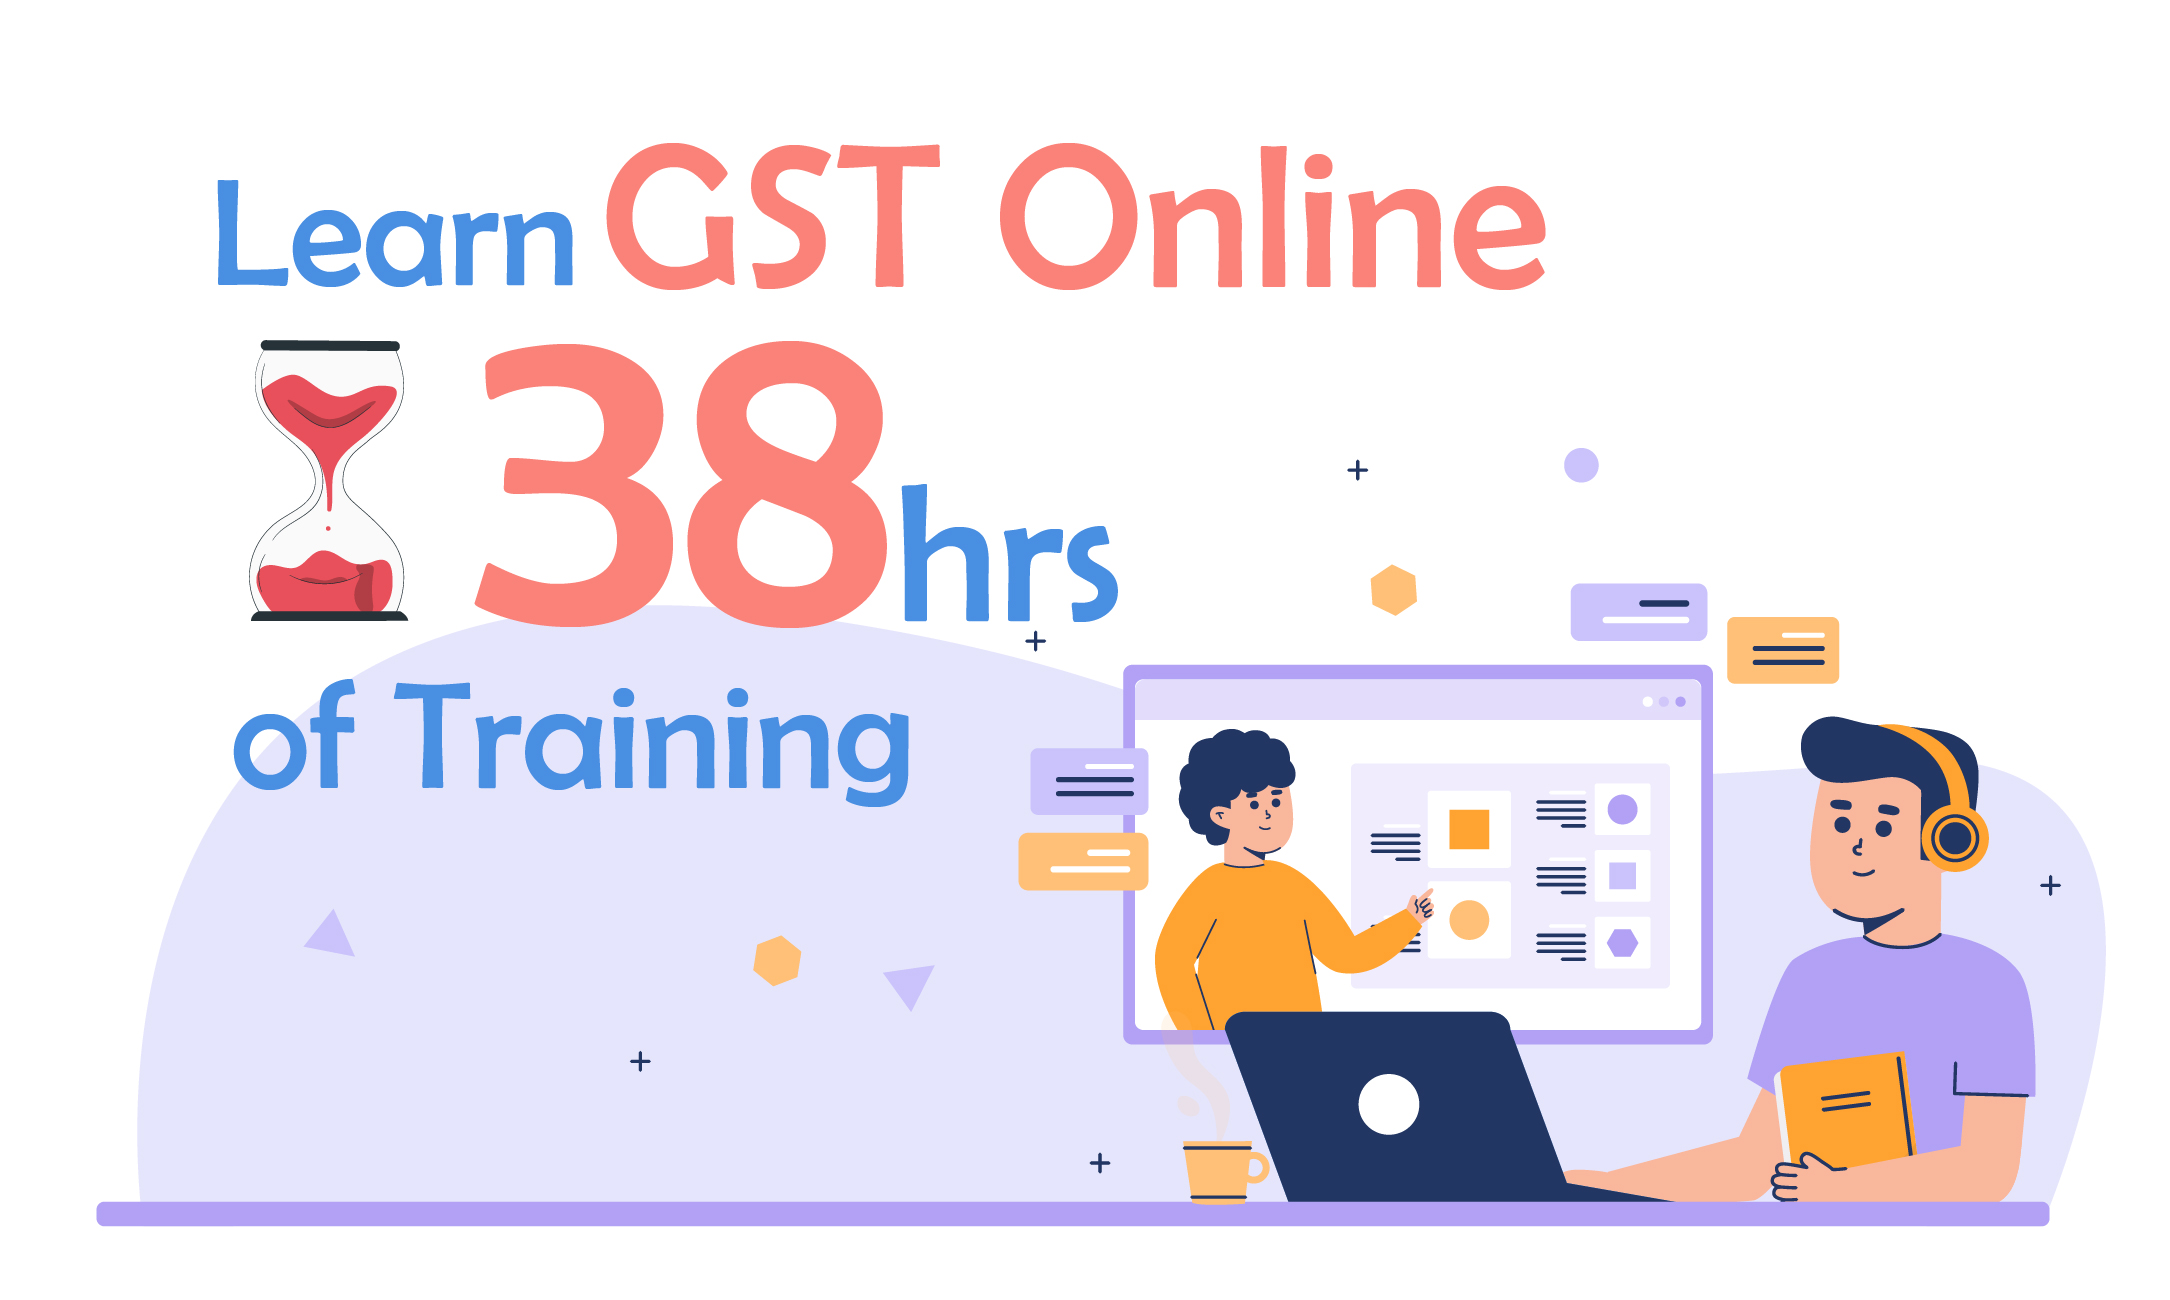 Learn GST Online